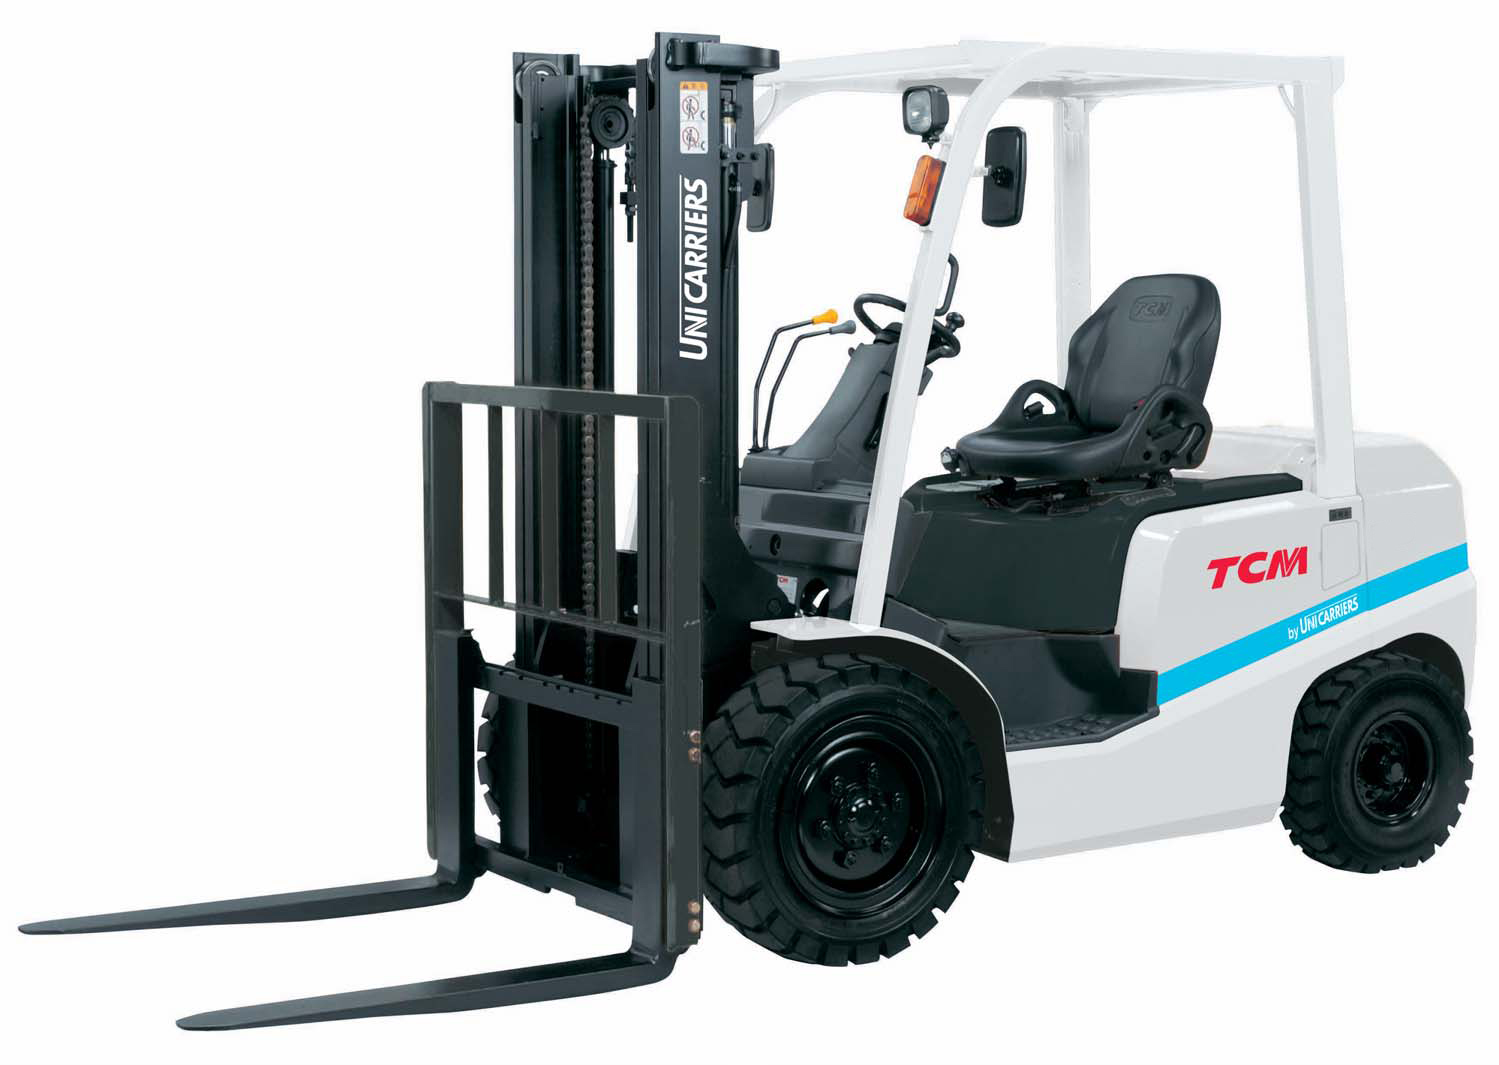 Diesel forklift TCM FD100Z8